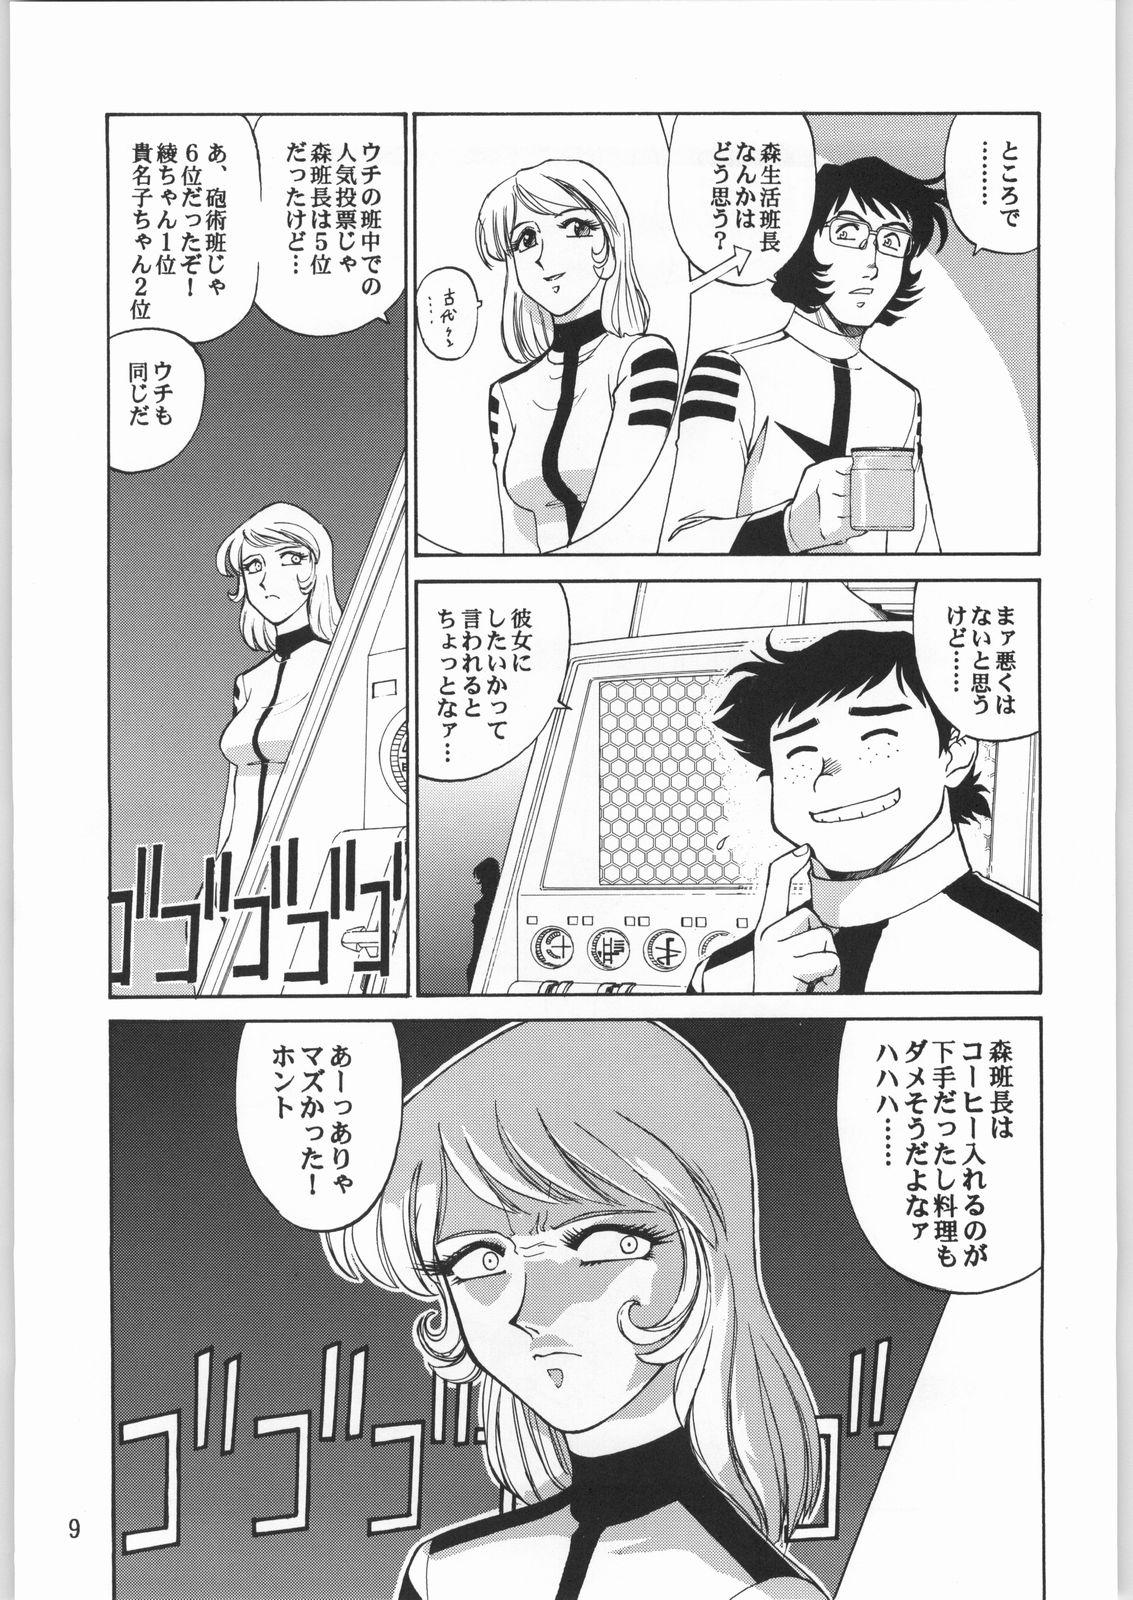 Sloppy Blow Job Megaton Punch 1 - Space battleship yamato Chobits Grandpa - Page 8